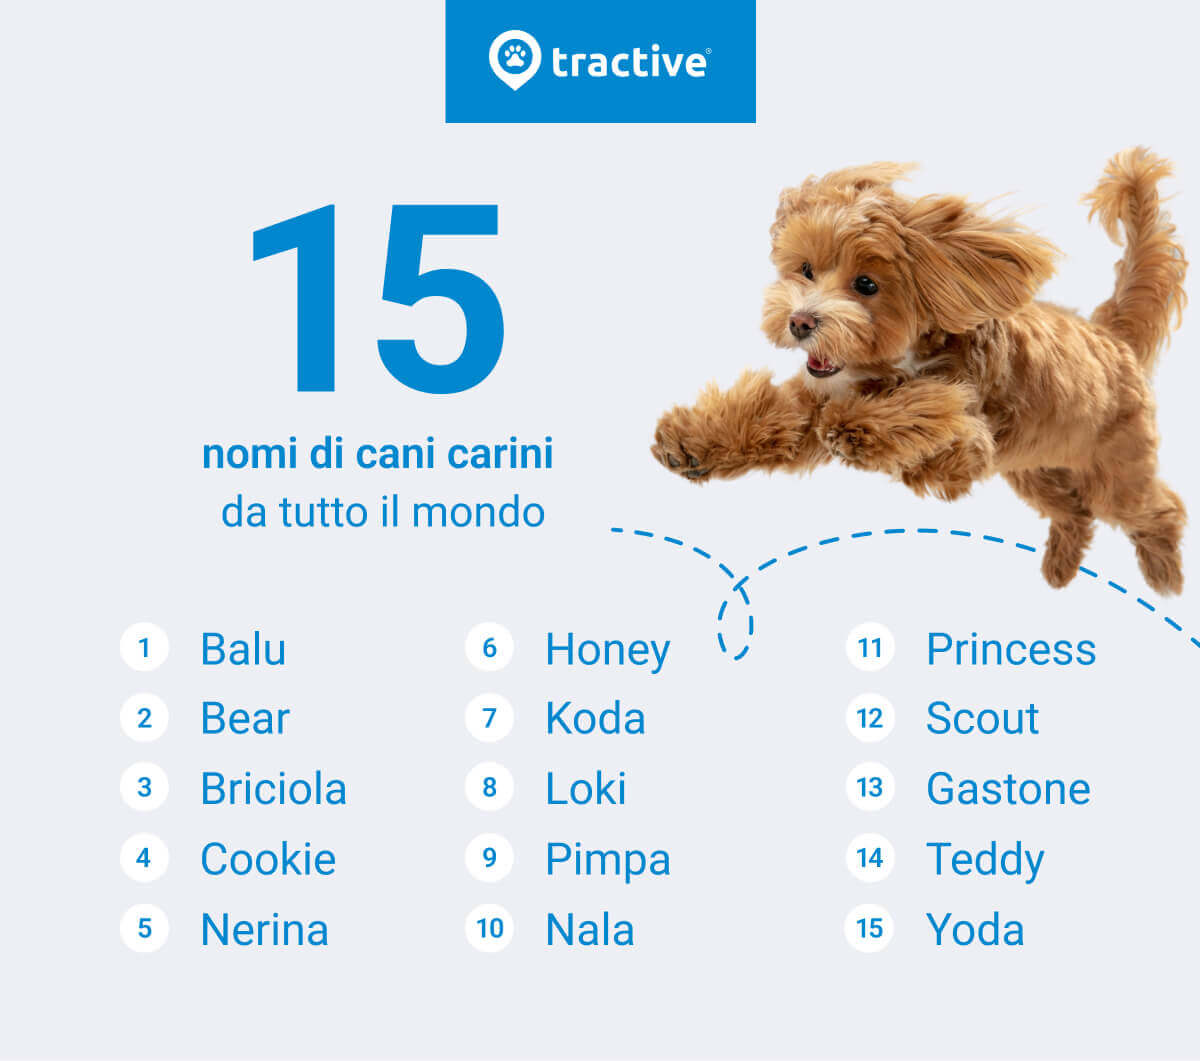 15 nomi di cani carini da tutto il mondo